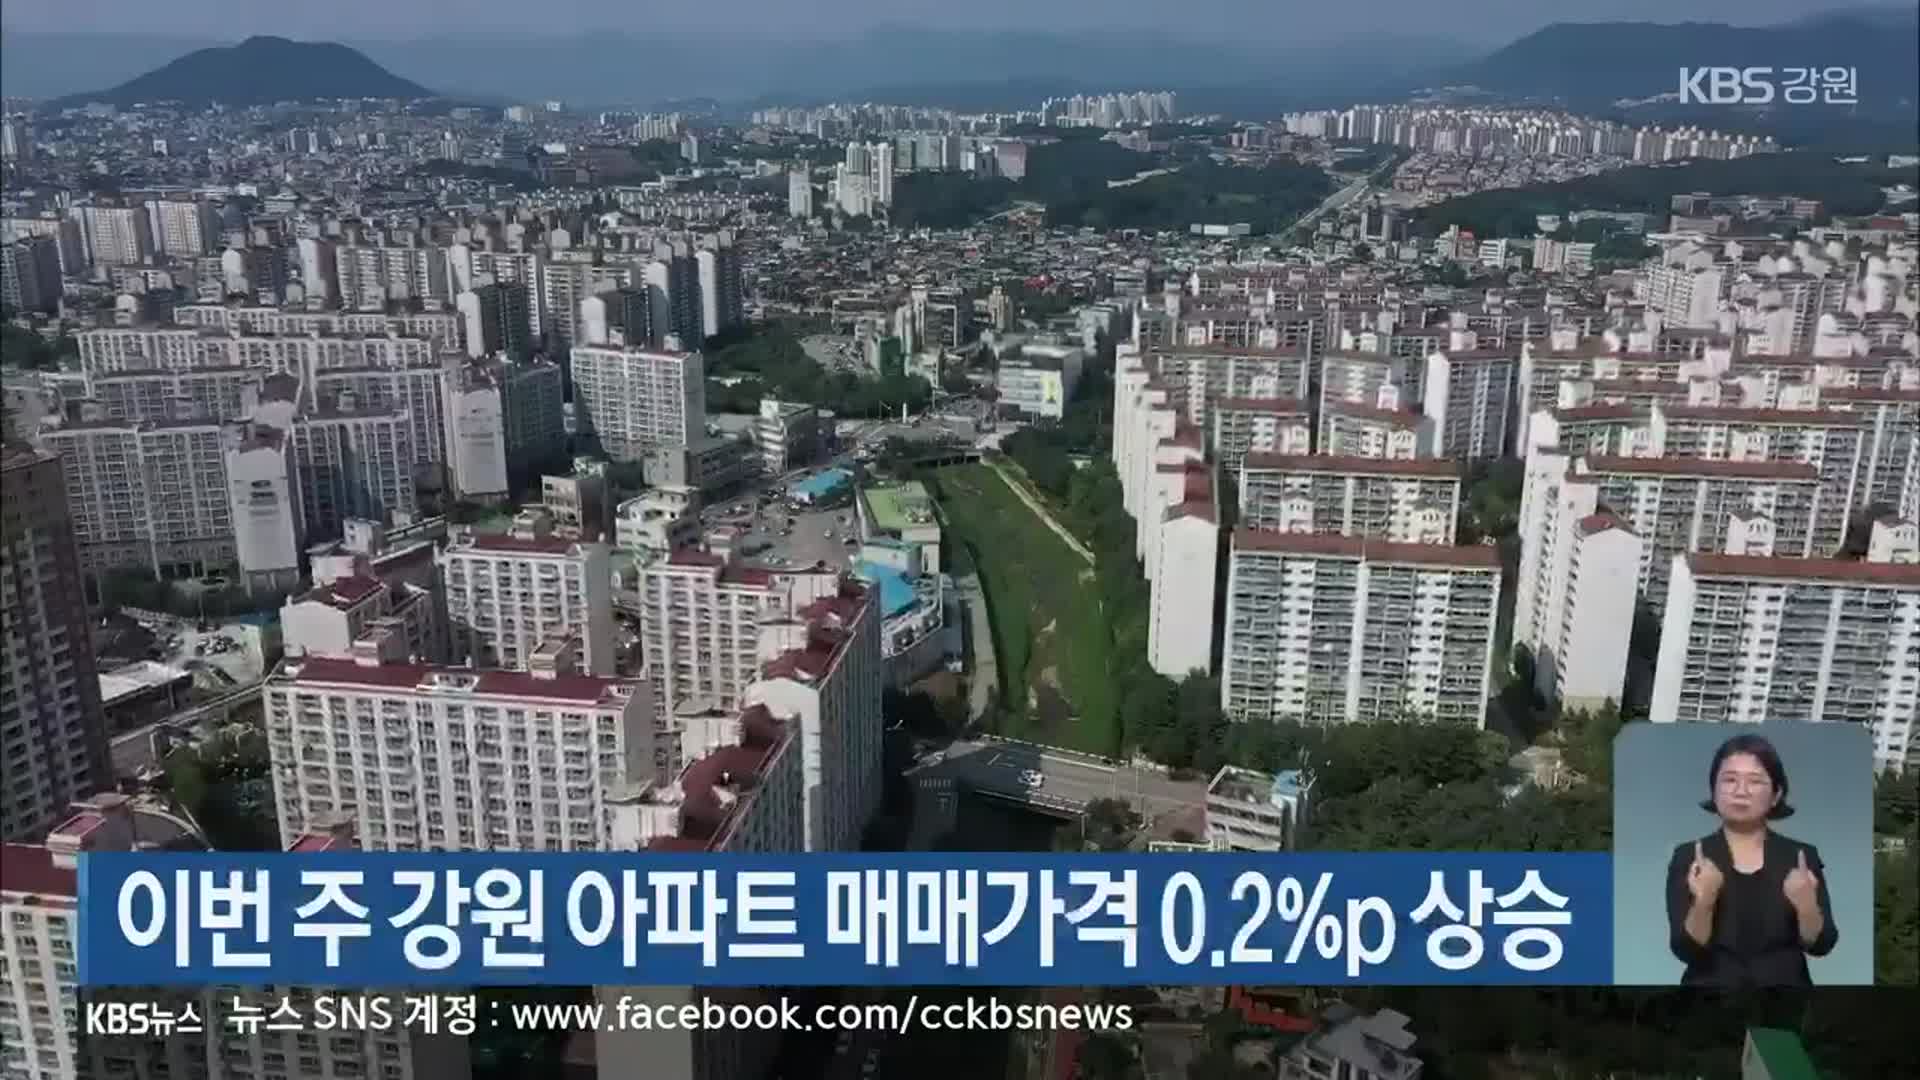 이번 주 강원 아파트 매매가격 0.2%p 상승